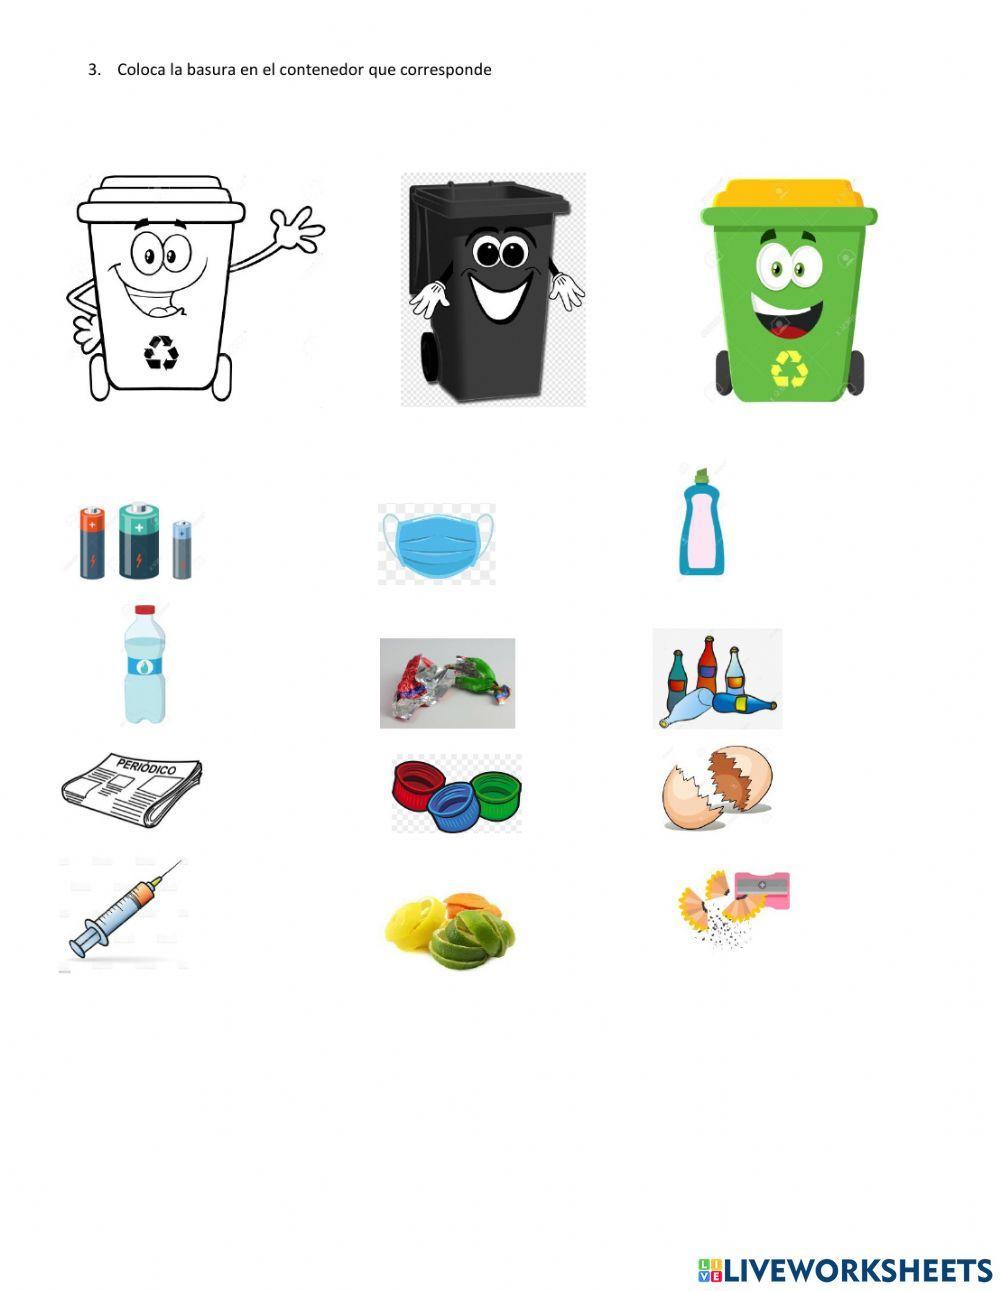 Los residuos solidos y su reciclaje